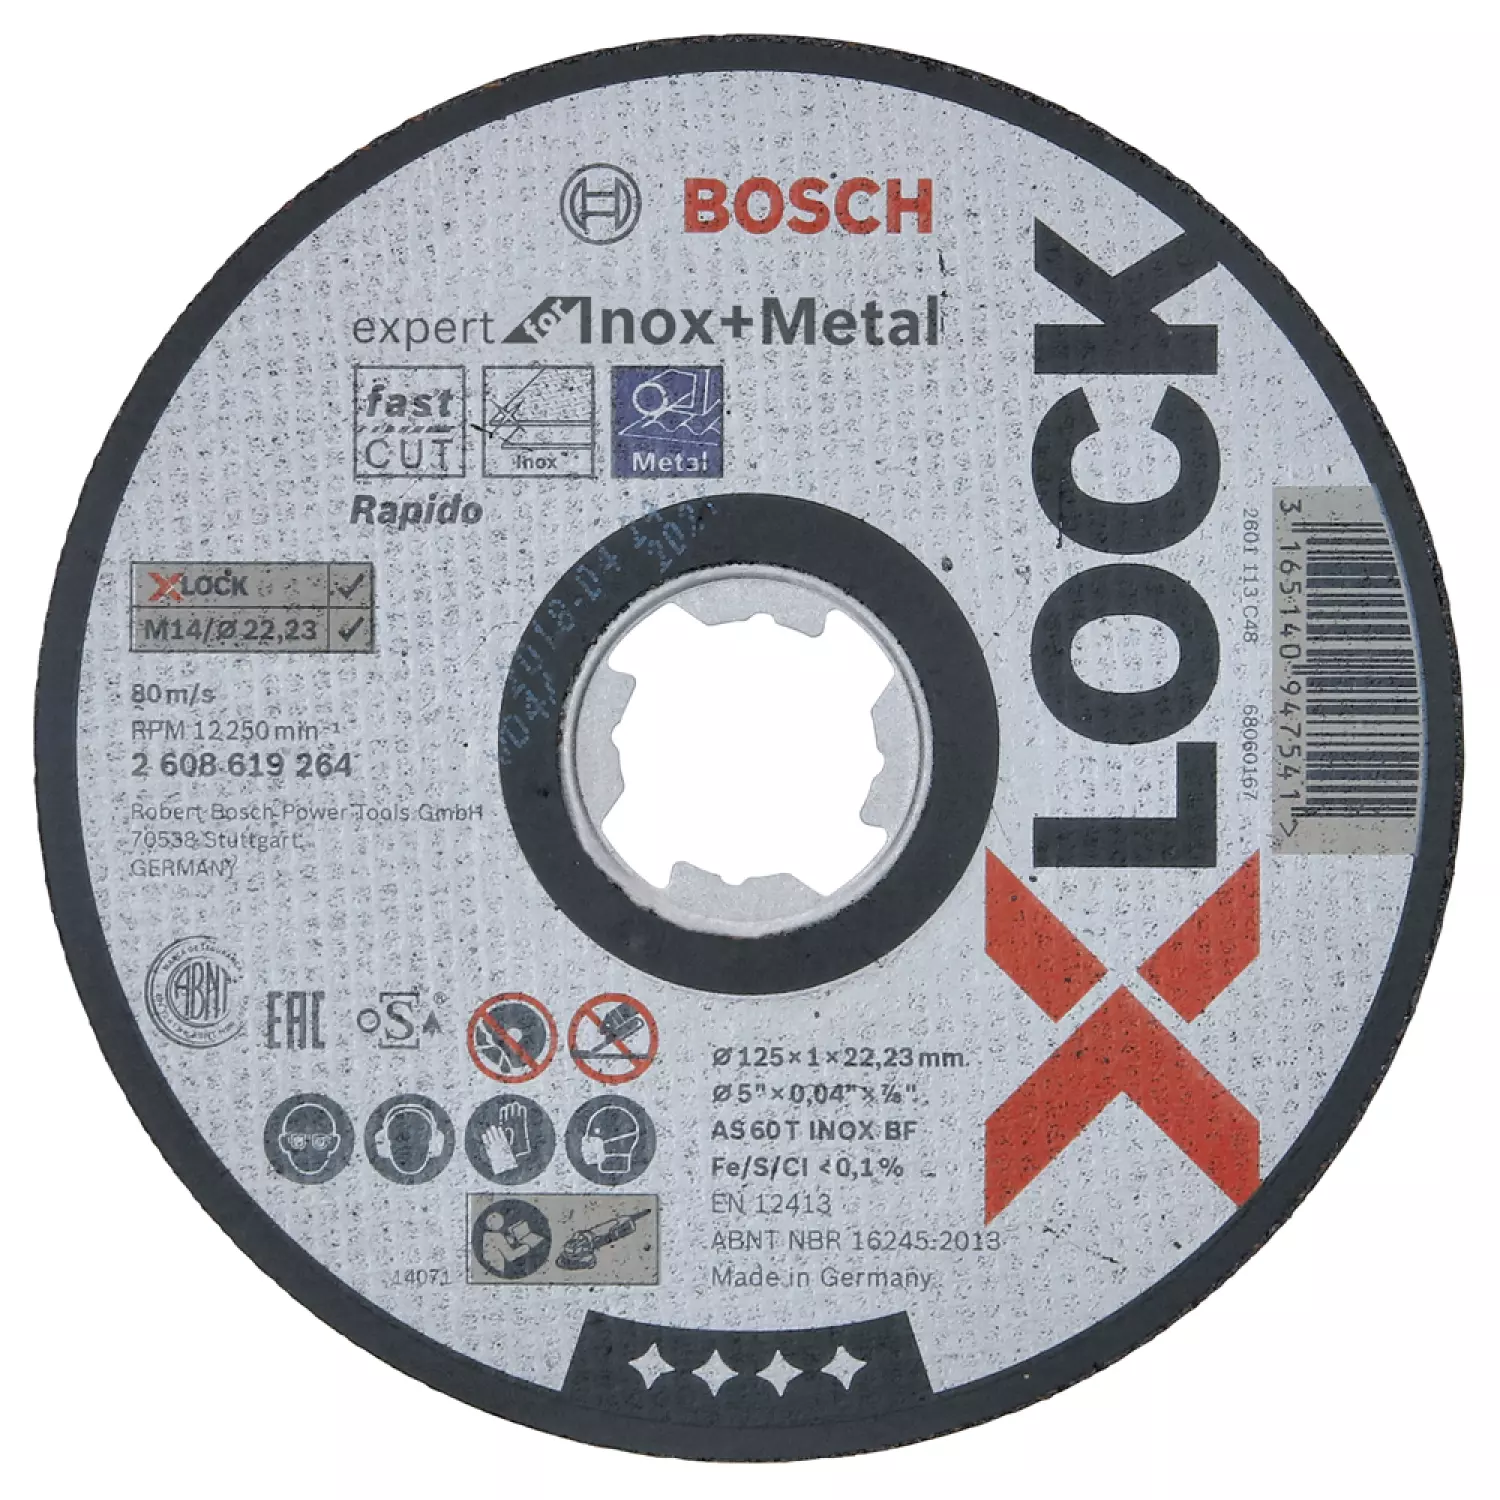 Bosch 2608619264 - X-LOCK Disque à tronçonner Expert forInox & Metal 125x1x22.23mm, plat